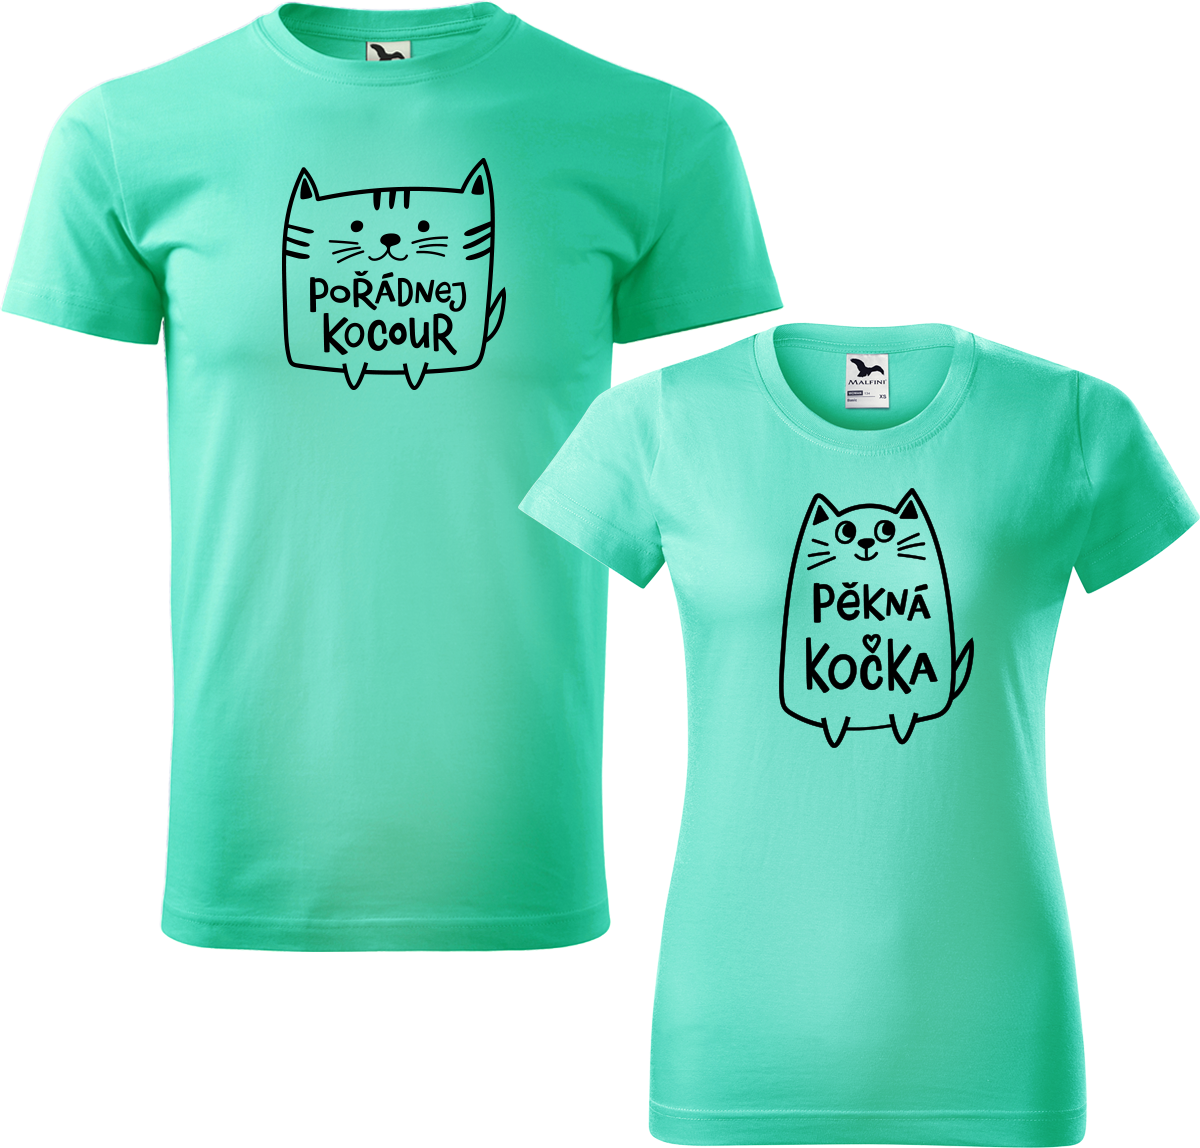 Trička pro páry - Pořádnej kocour a pěkná kočka Barva: Mátová (95), Velikost dámské tričko: M, Velikost pánské tričko: M